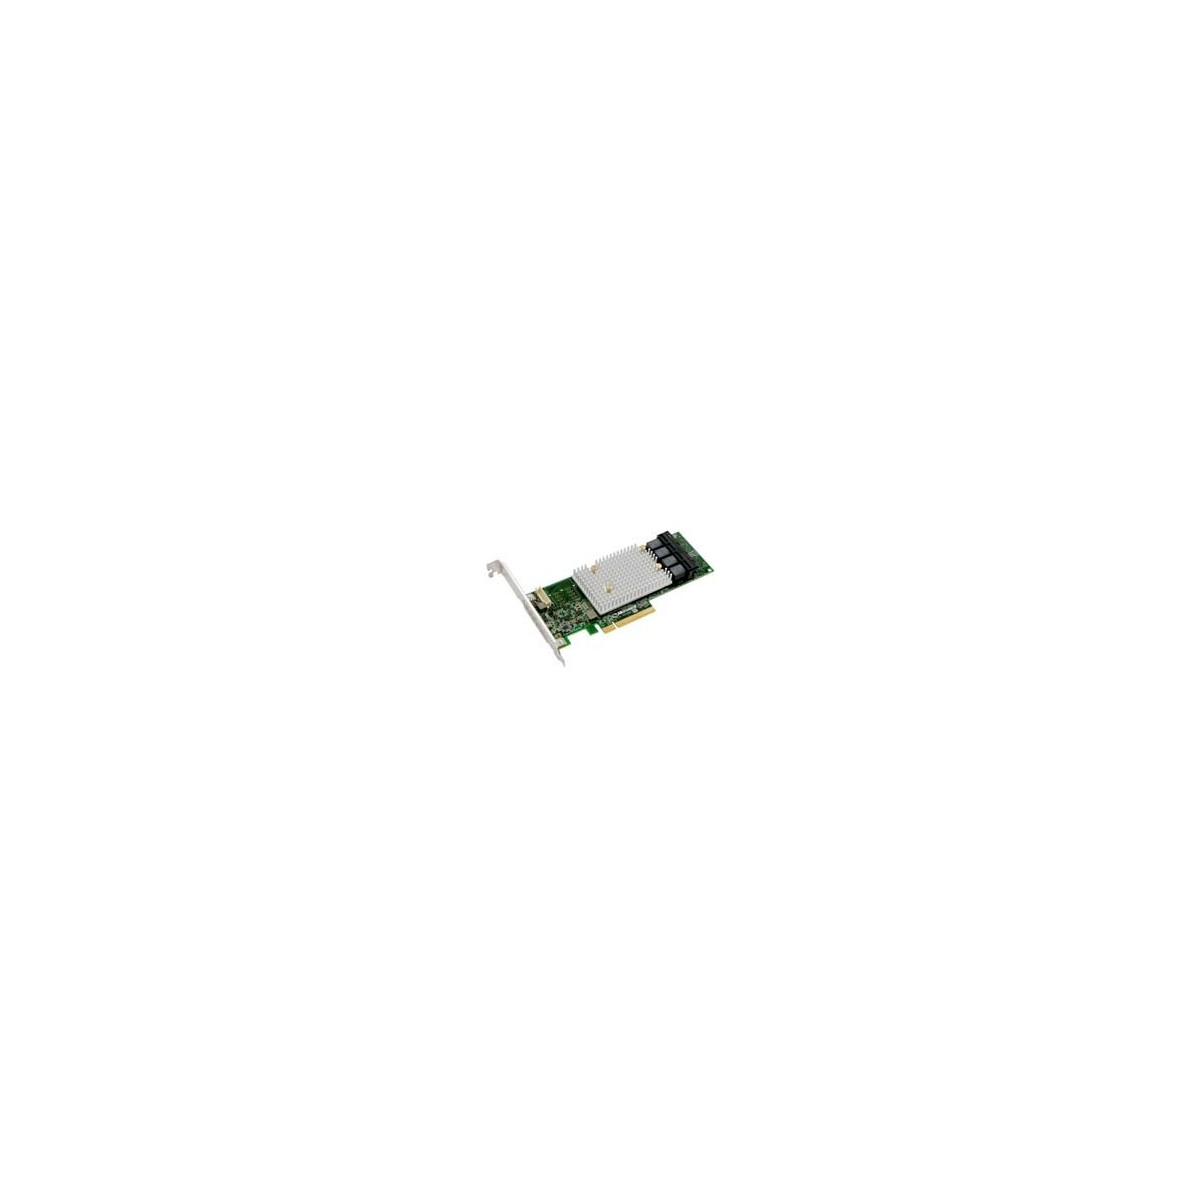 Microchip Technology SmartRAID 3154-16i - Speichercontroller Raid - 16 Sender-Kanal - Raid controller - Serial Attached SCSI (SA